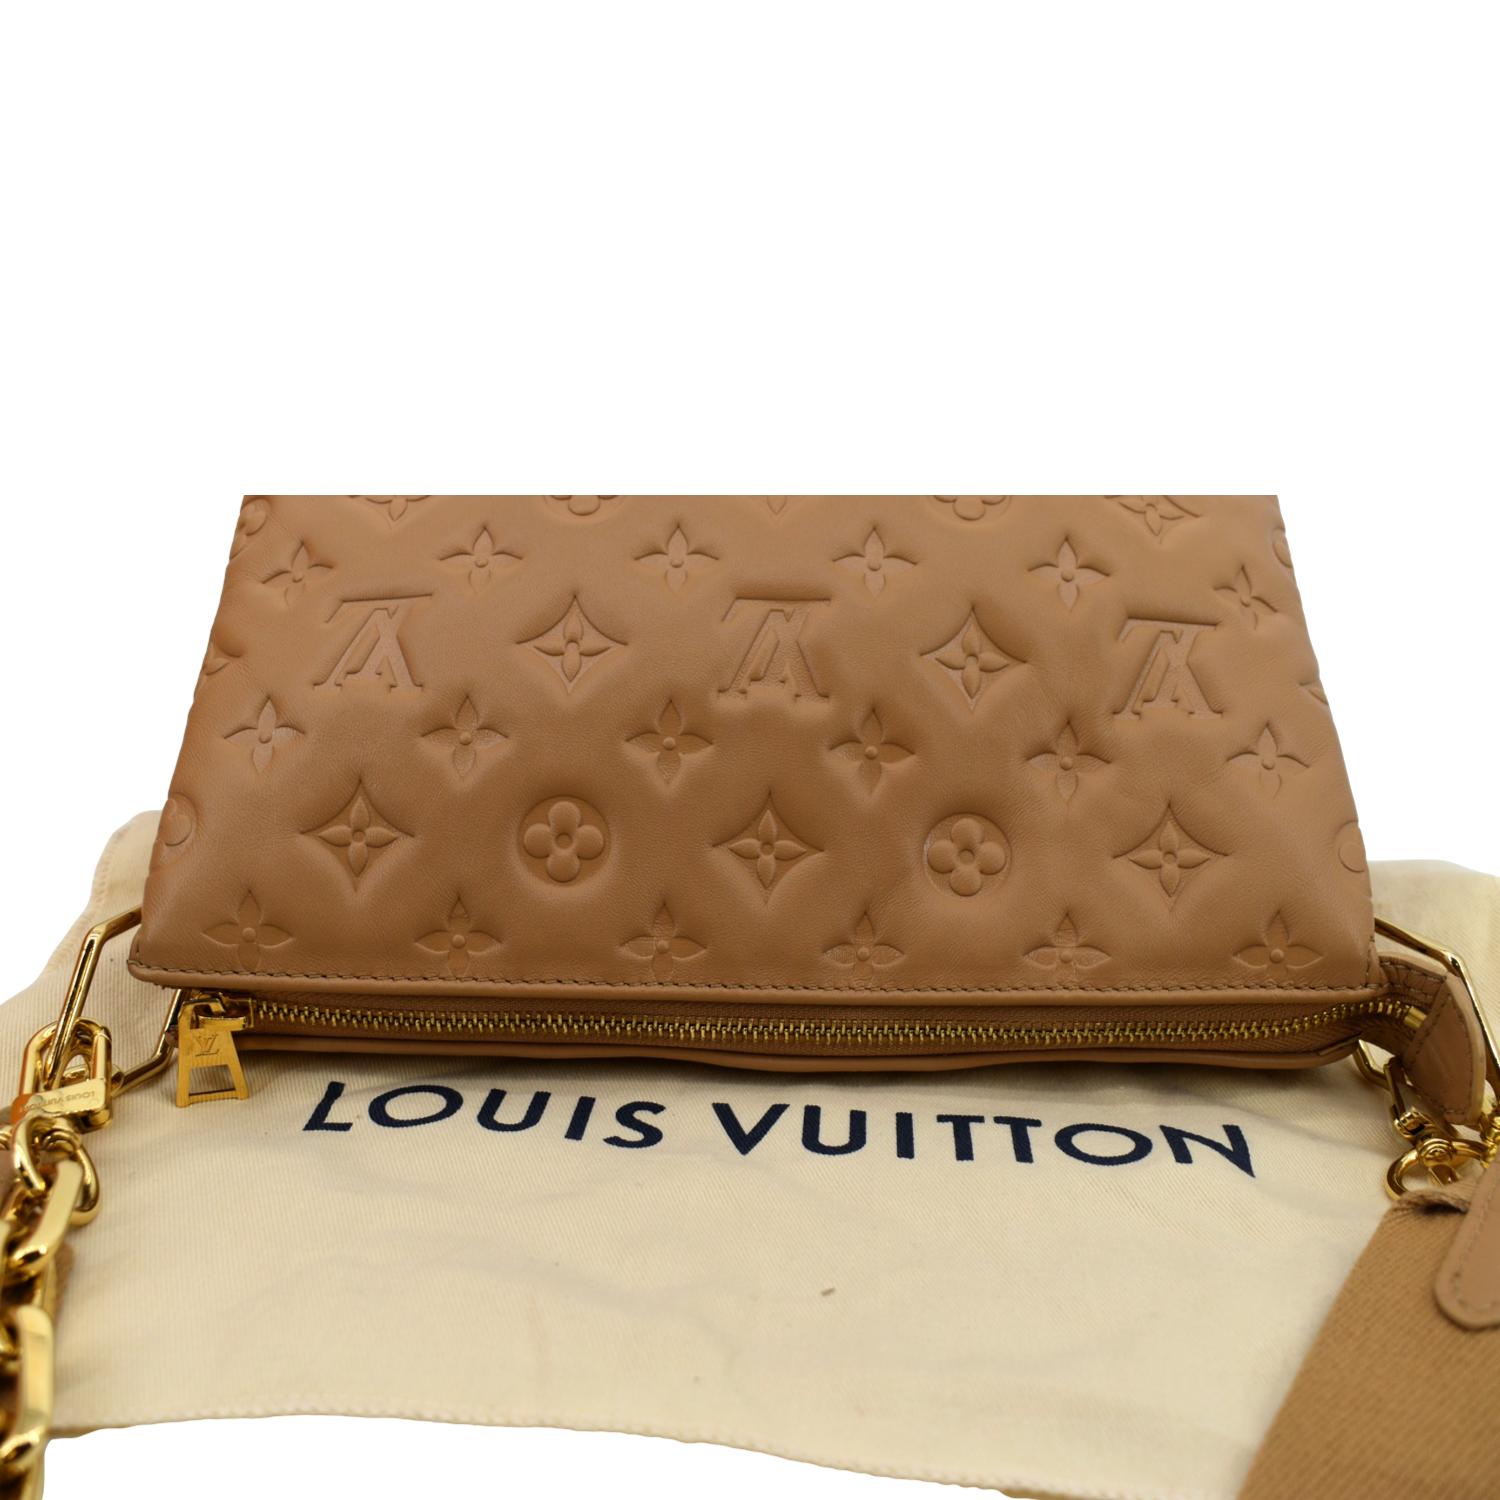 Purse Review - Louis Vuitton Pochette Coussin - Camel 